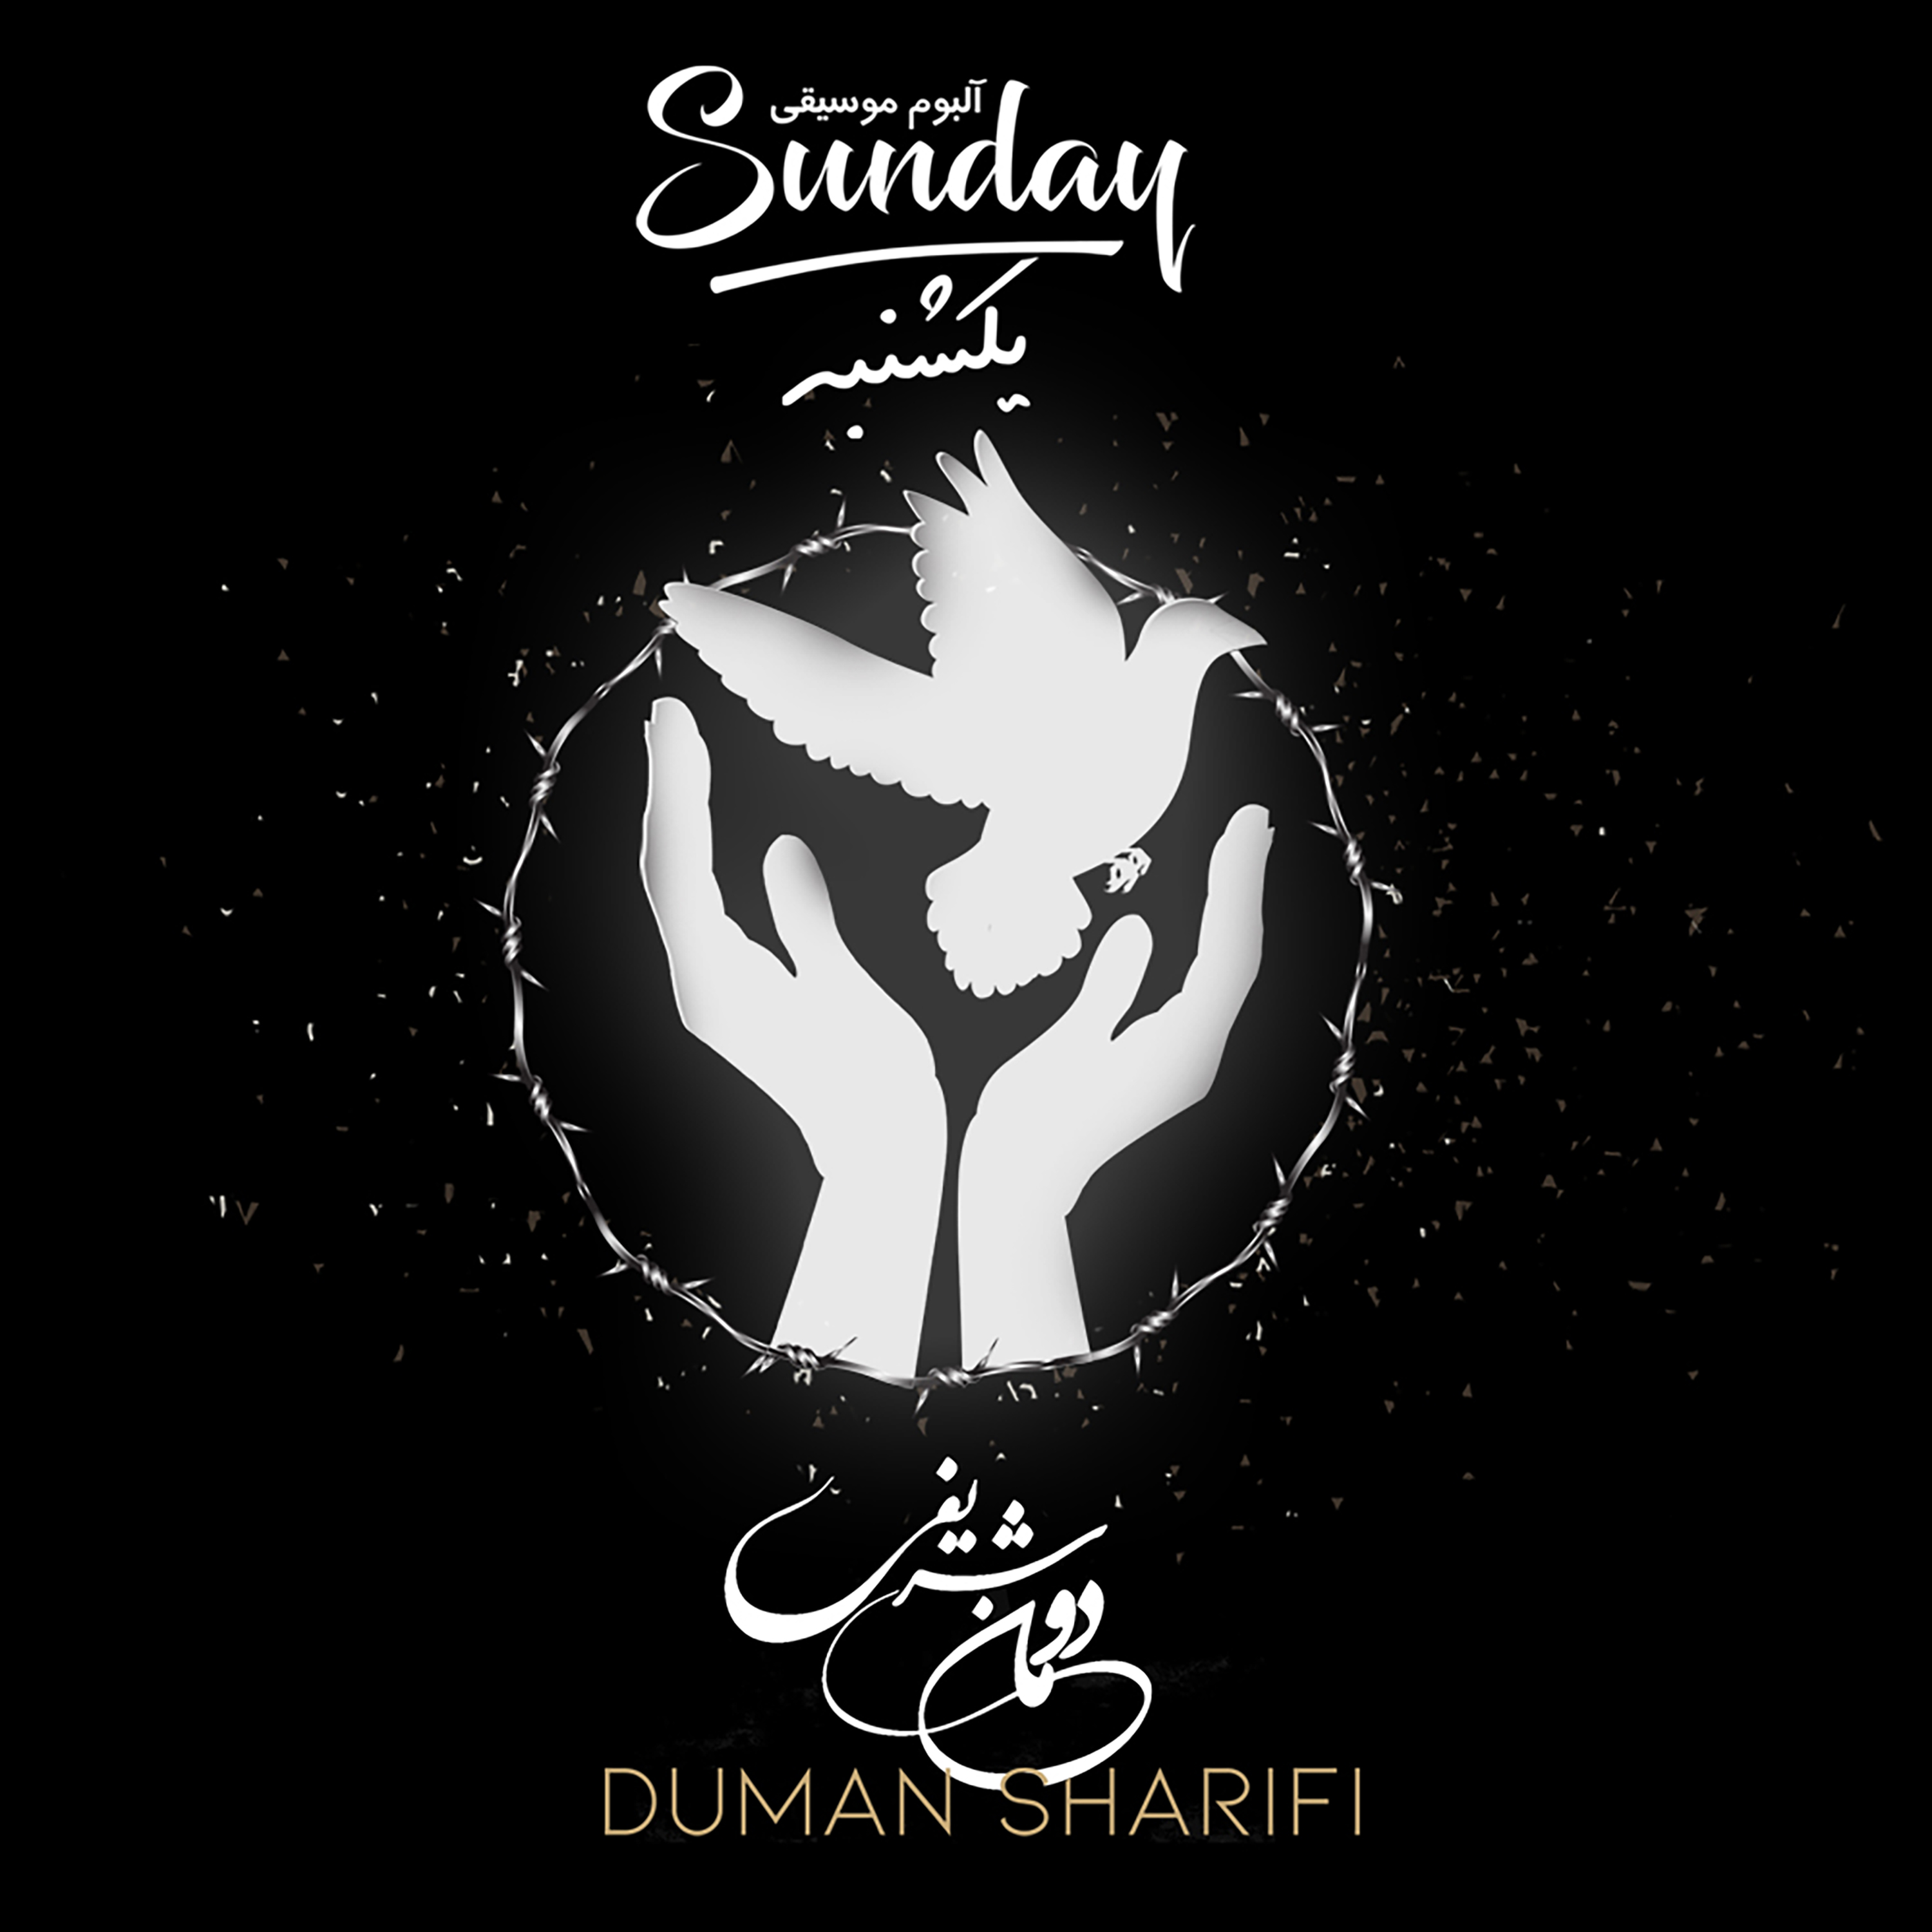  دانلود آهنگ جدید دومان شریفی - شاید | Download New Music By Duman Sharifi - Maybe